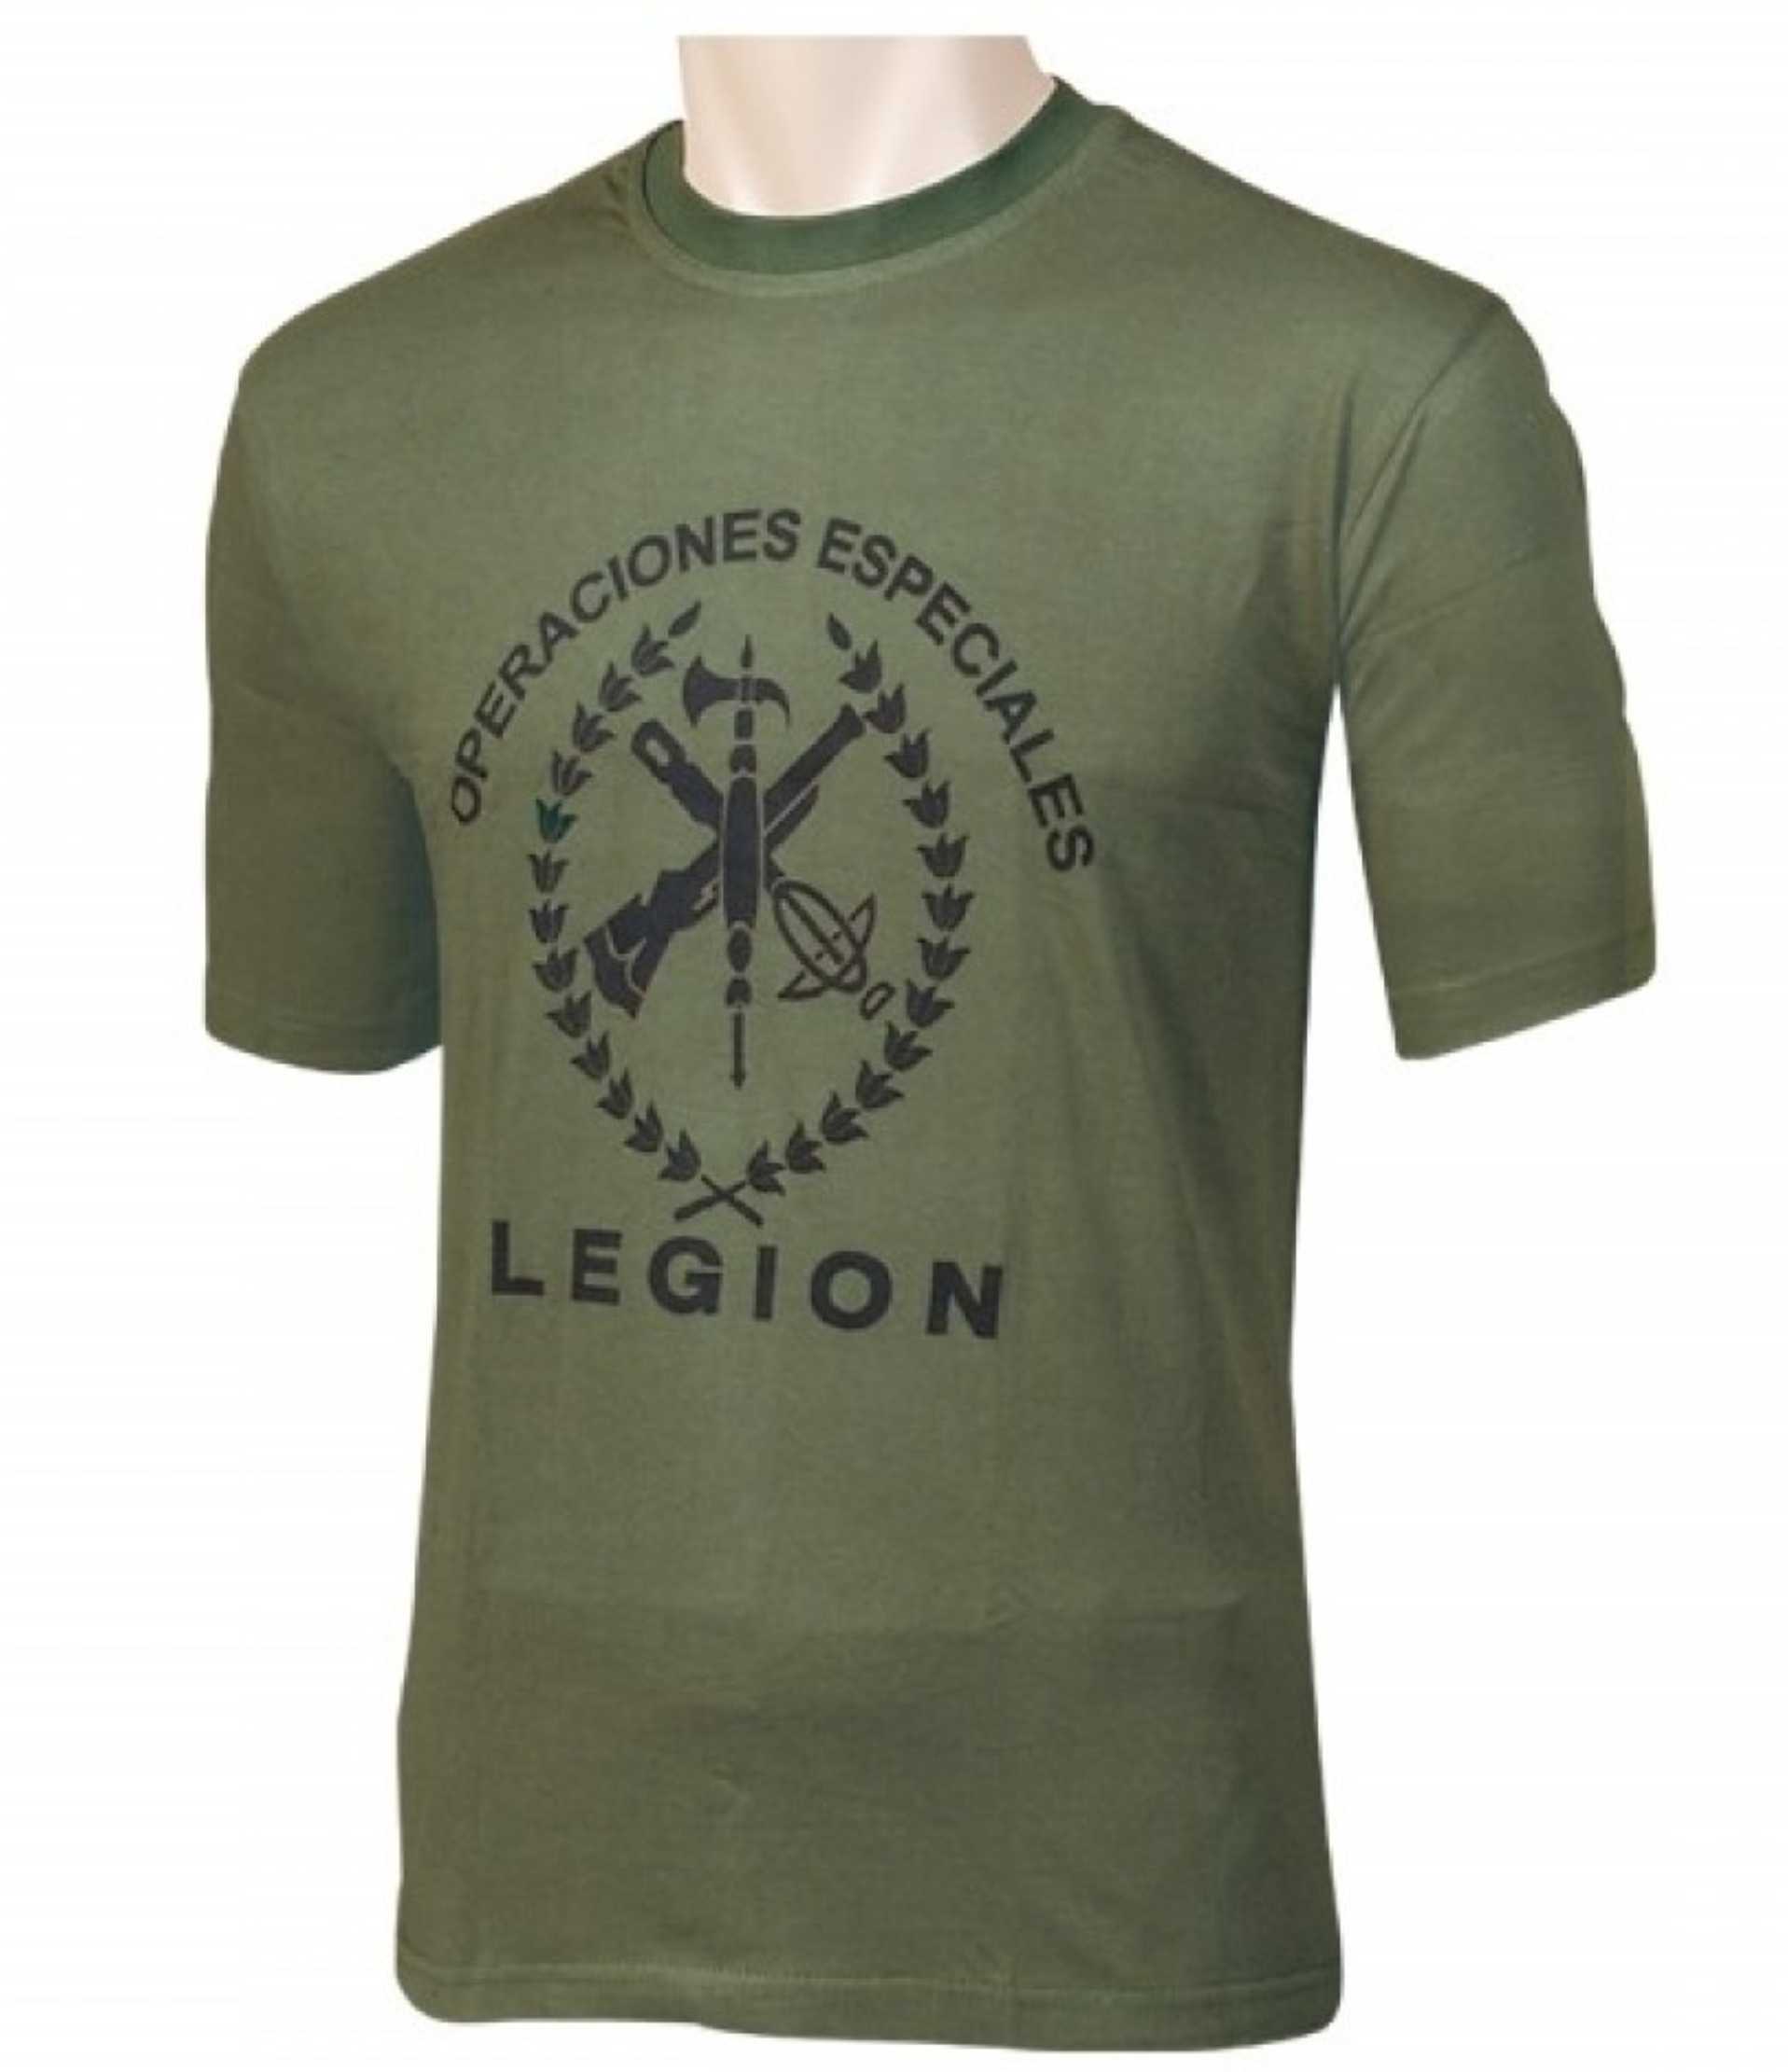 Camiseta Legión Española " Operaciones Especiales " verde